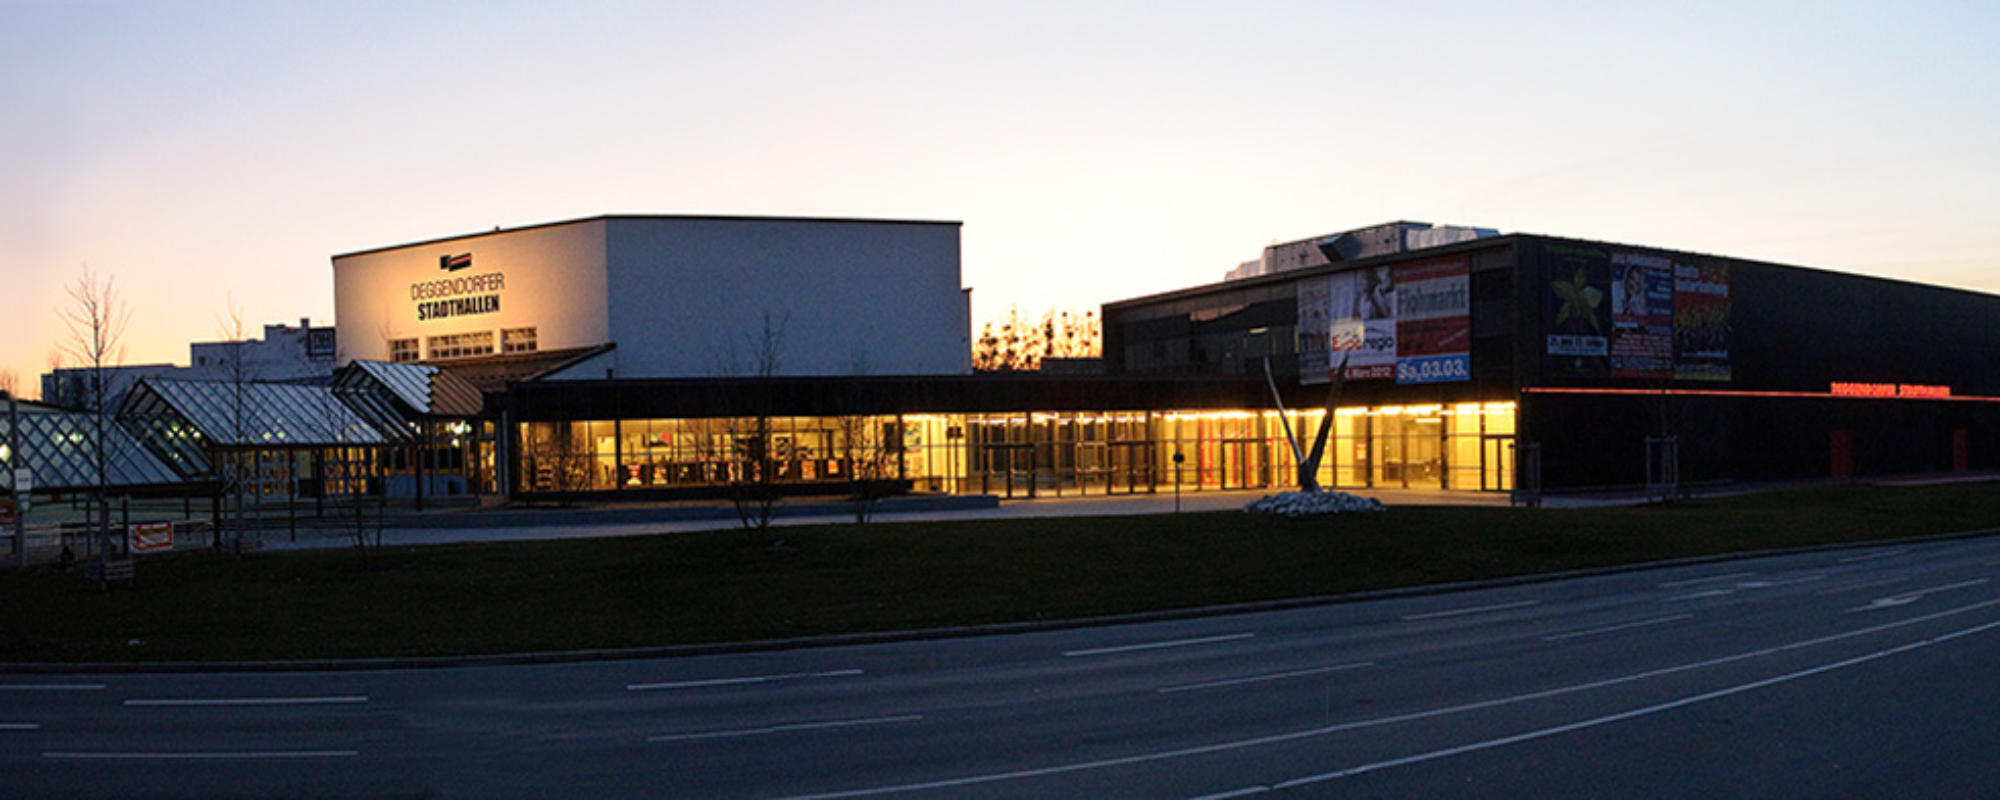 Deggendorfer Stadthallen bei Nacht